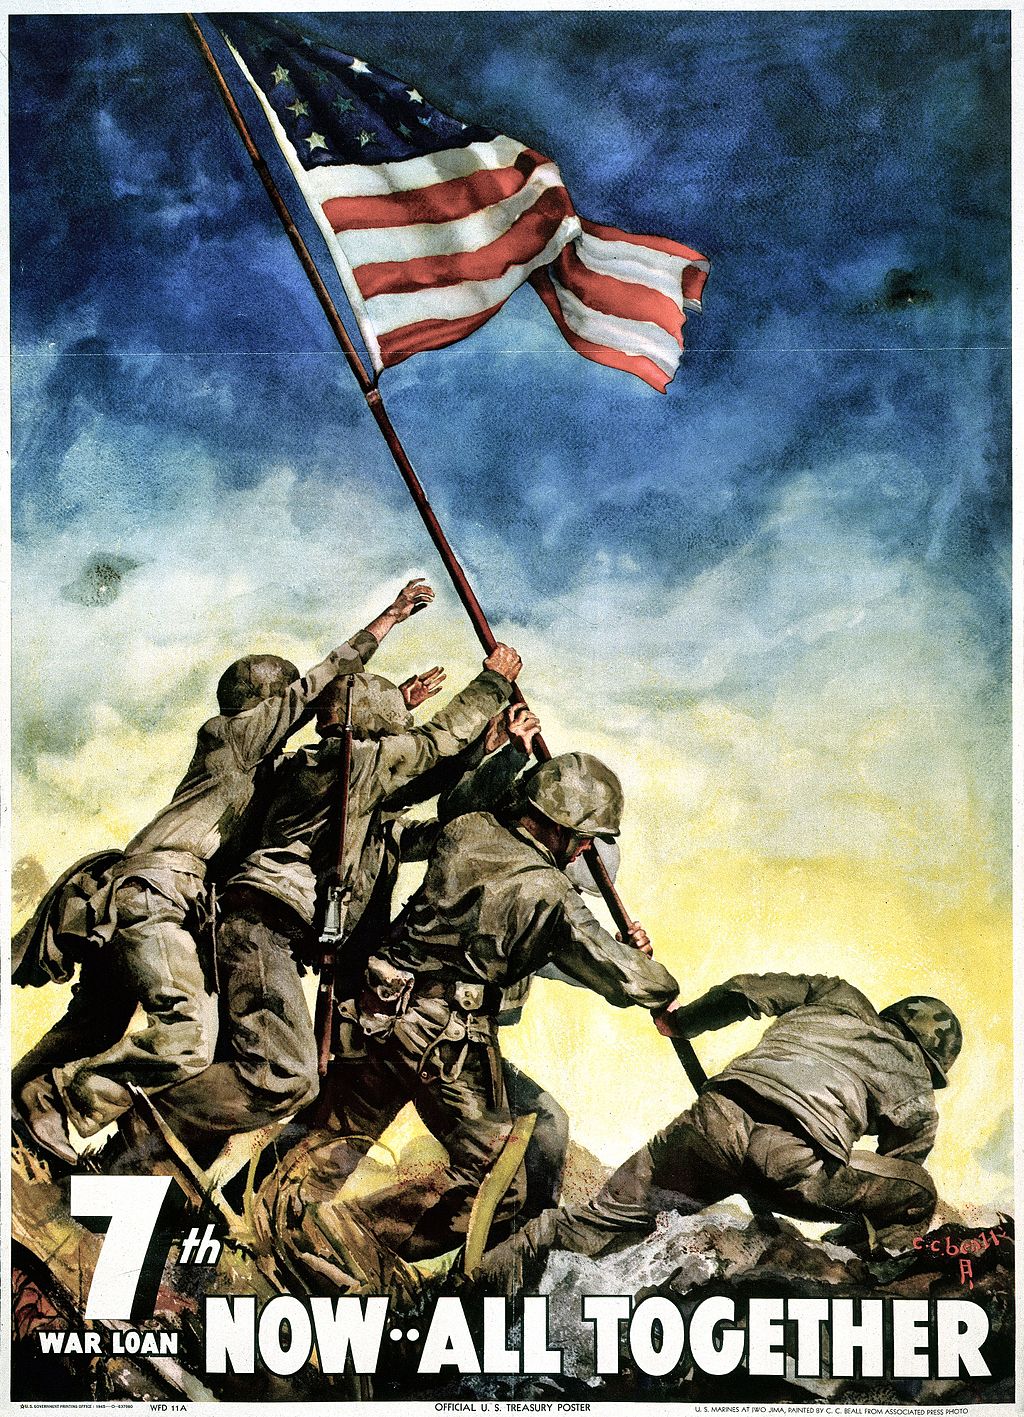 الصورة التي سوقت الحرب للأمريكيين. ملصق لتشجيع شراء سندات دين في الحرب العالمية الثانية (ويكيميديا)